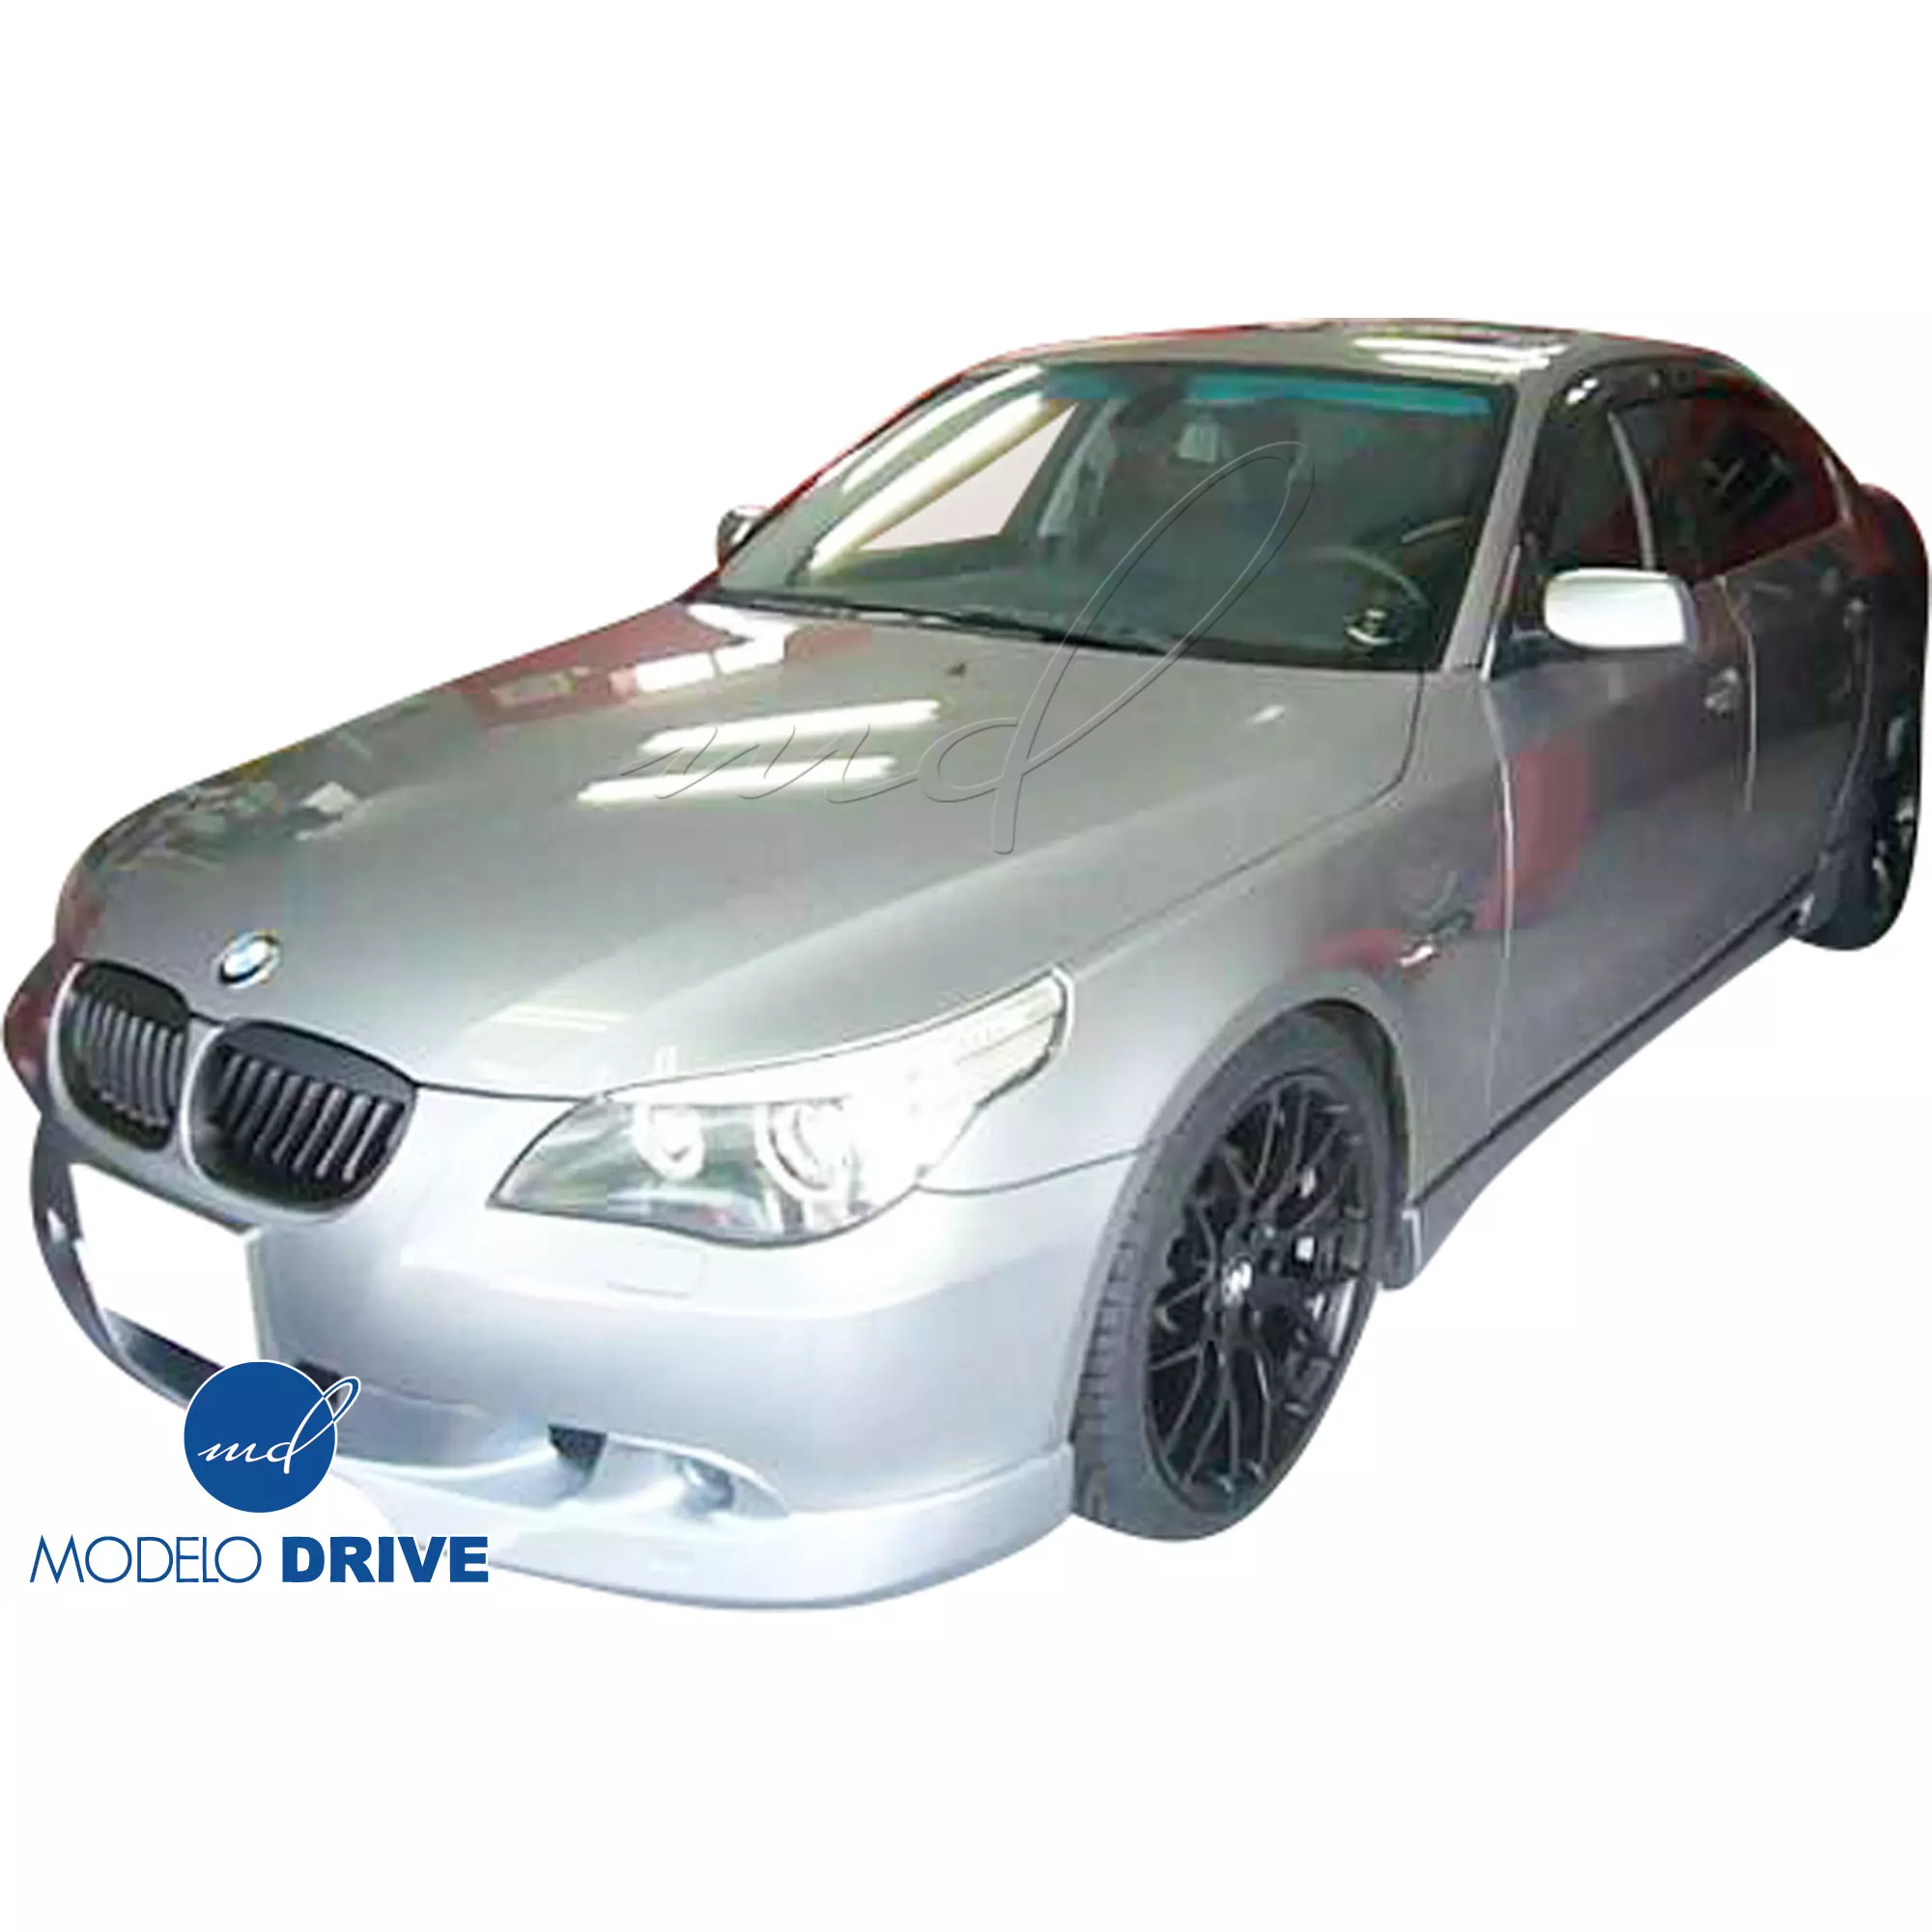 ModeloDrive FRP ASCH Body Kit 4pc > BMW 5-Series E60 2004-2010 > 4dr - Image 5